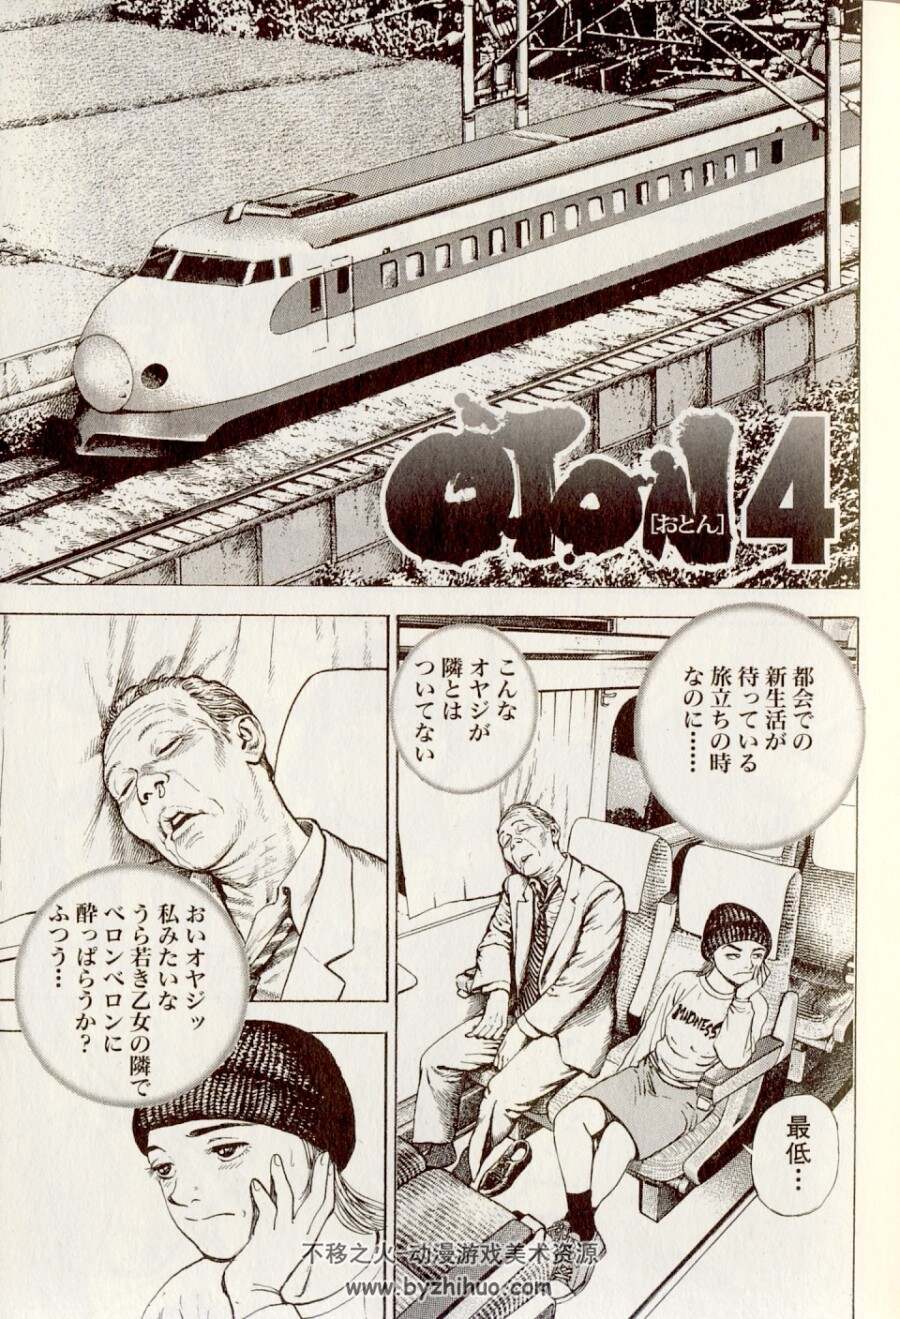 タフ外伝 OTON 2卷完结漫画 百度网盘下载